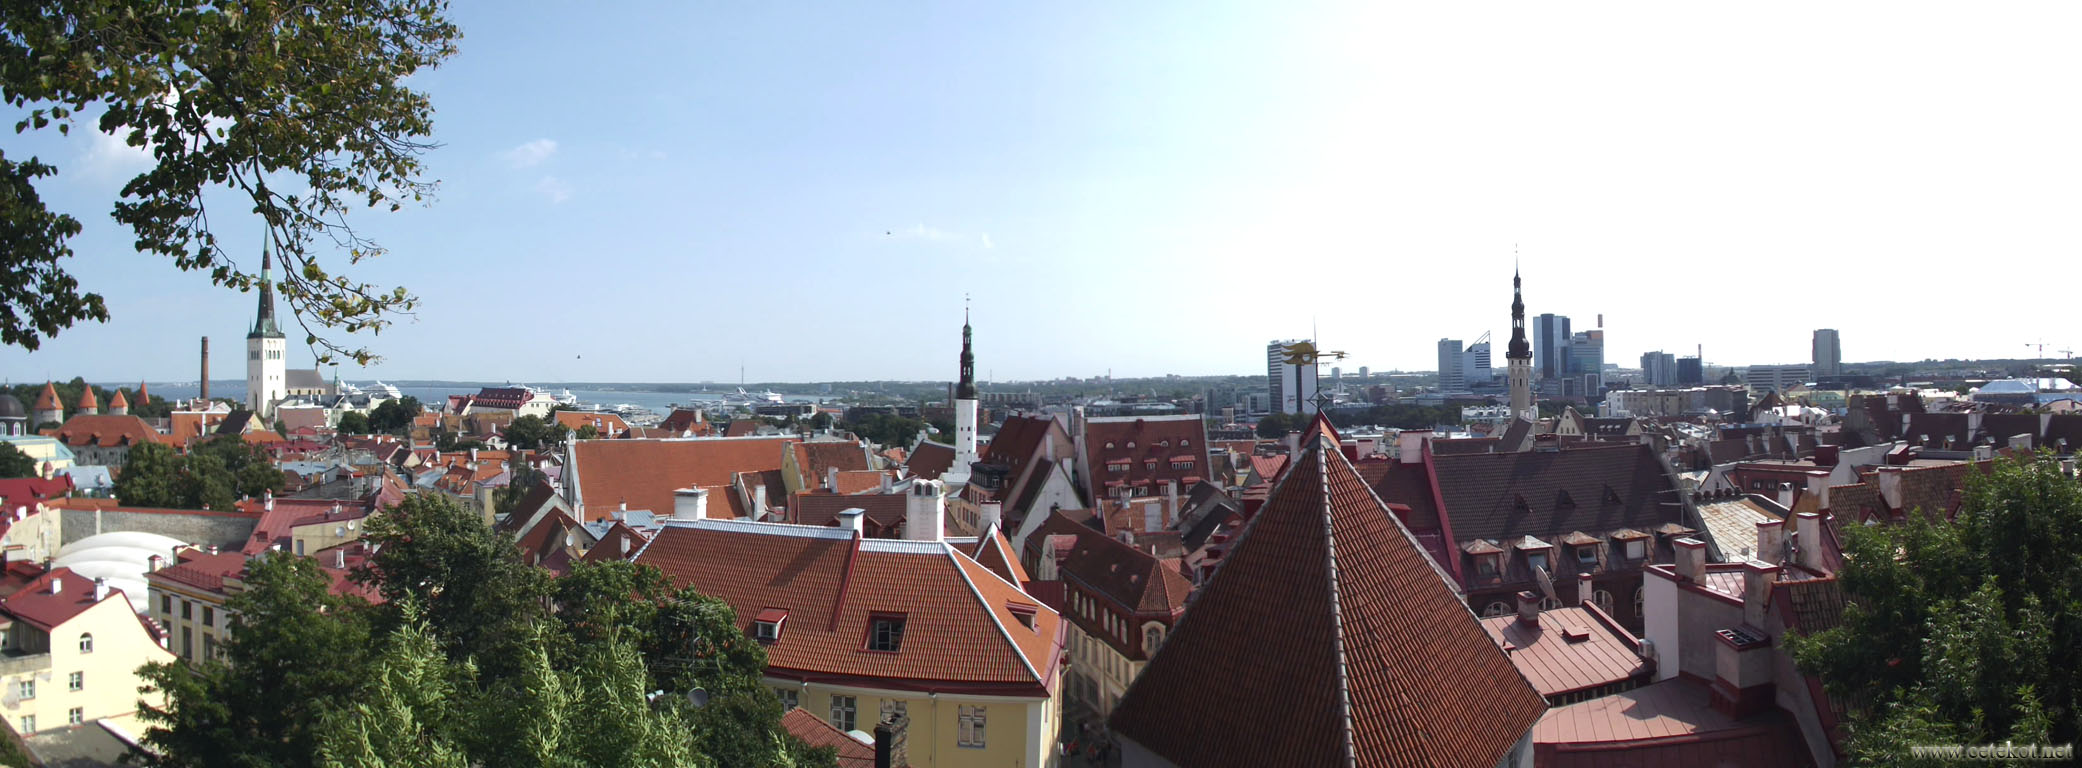 Таллин: панорама города.